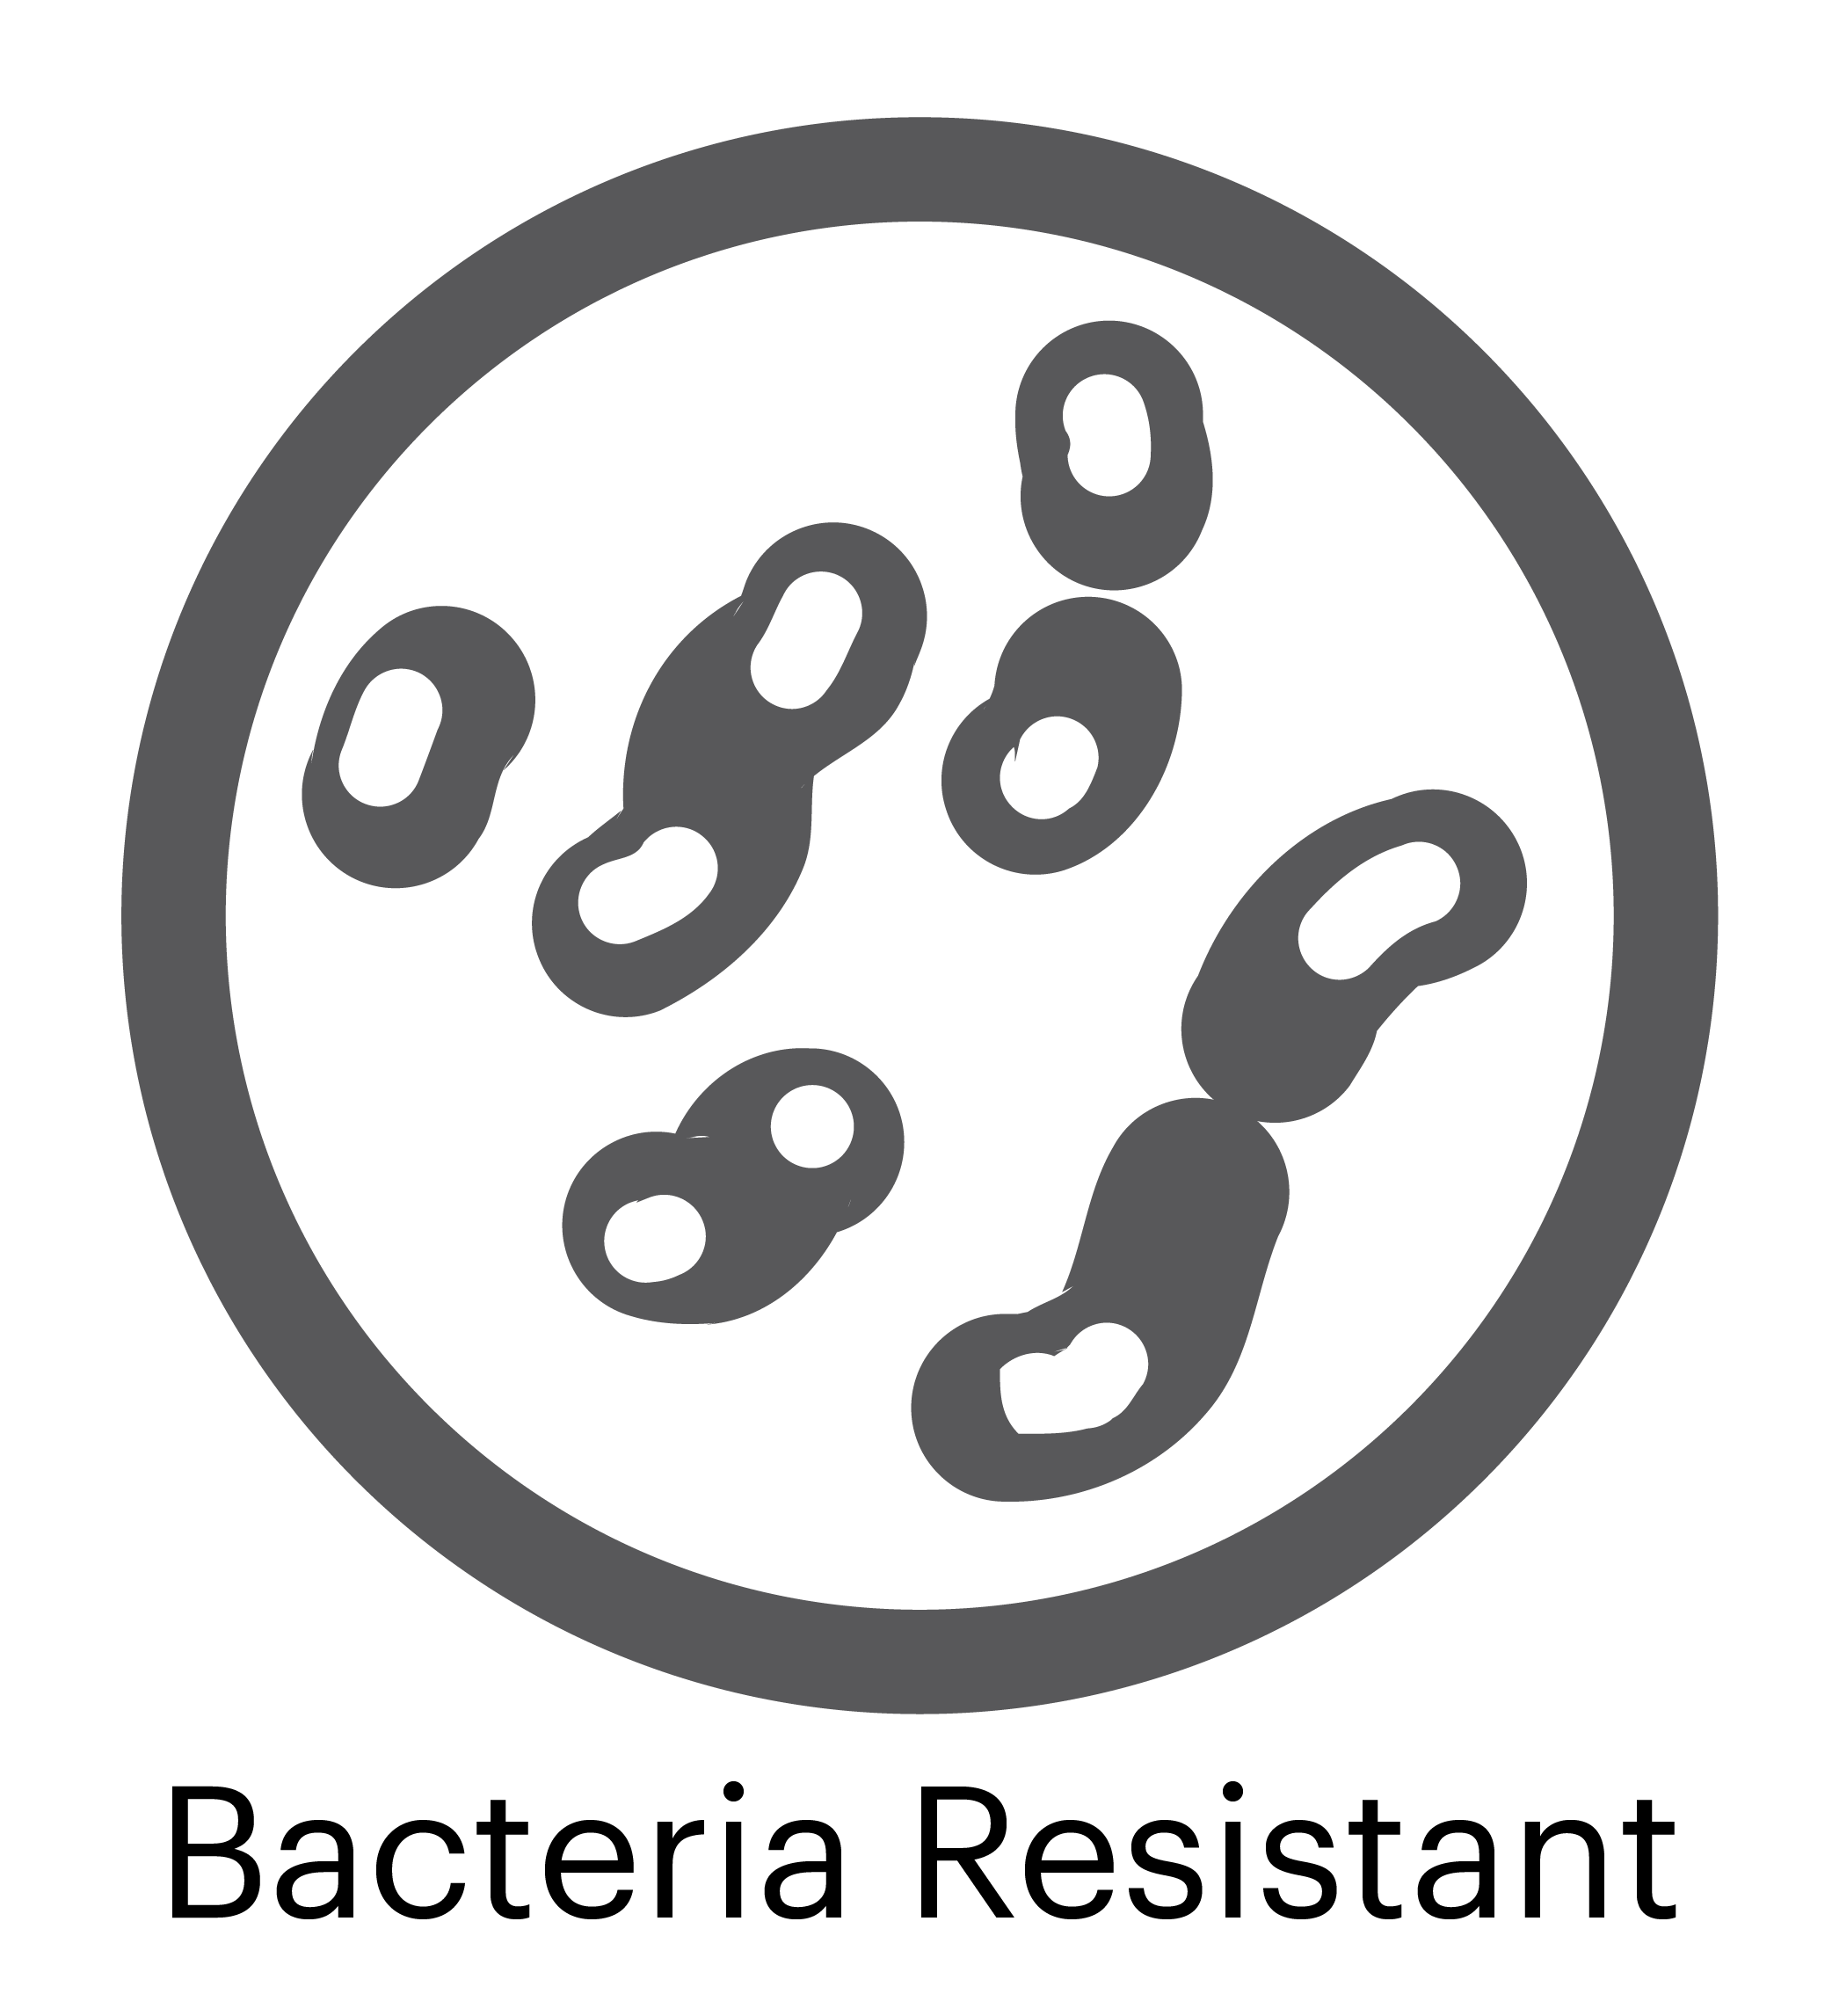 Bacteria Logo - Bacteria Logo. About of logos